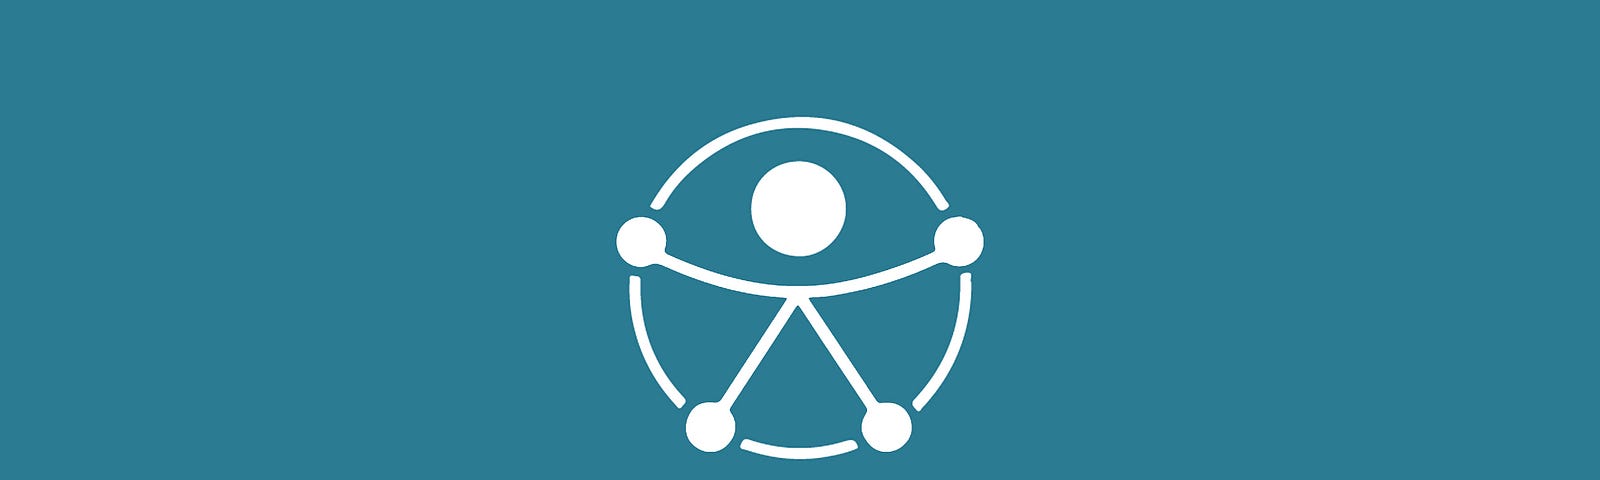 Logo universal de Acessibilidade criado pela ONU para uso de domínio público